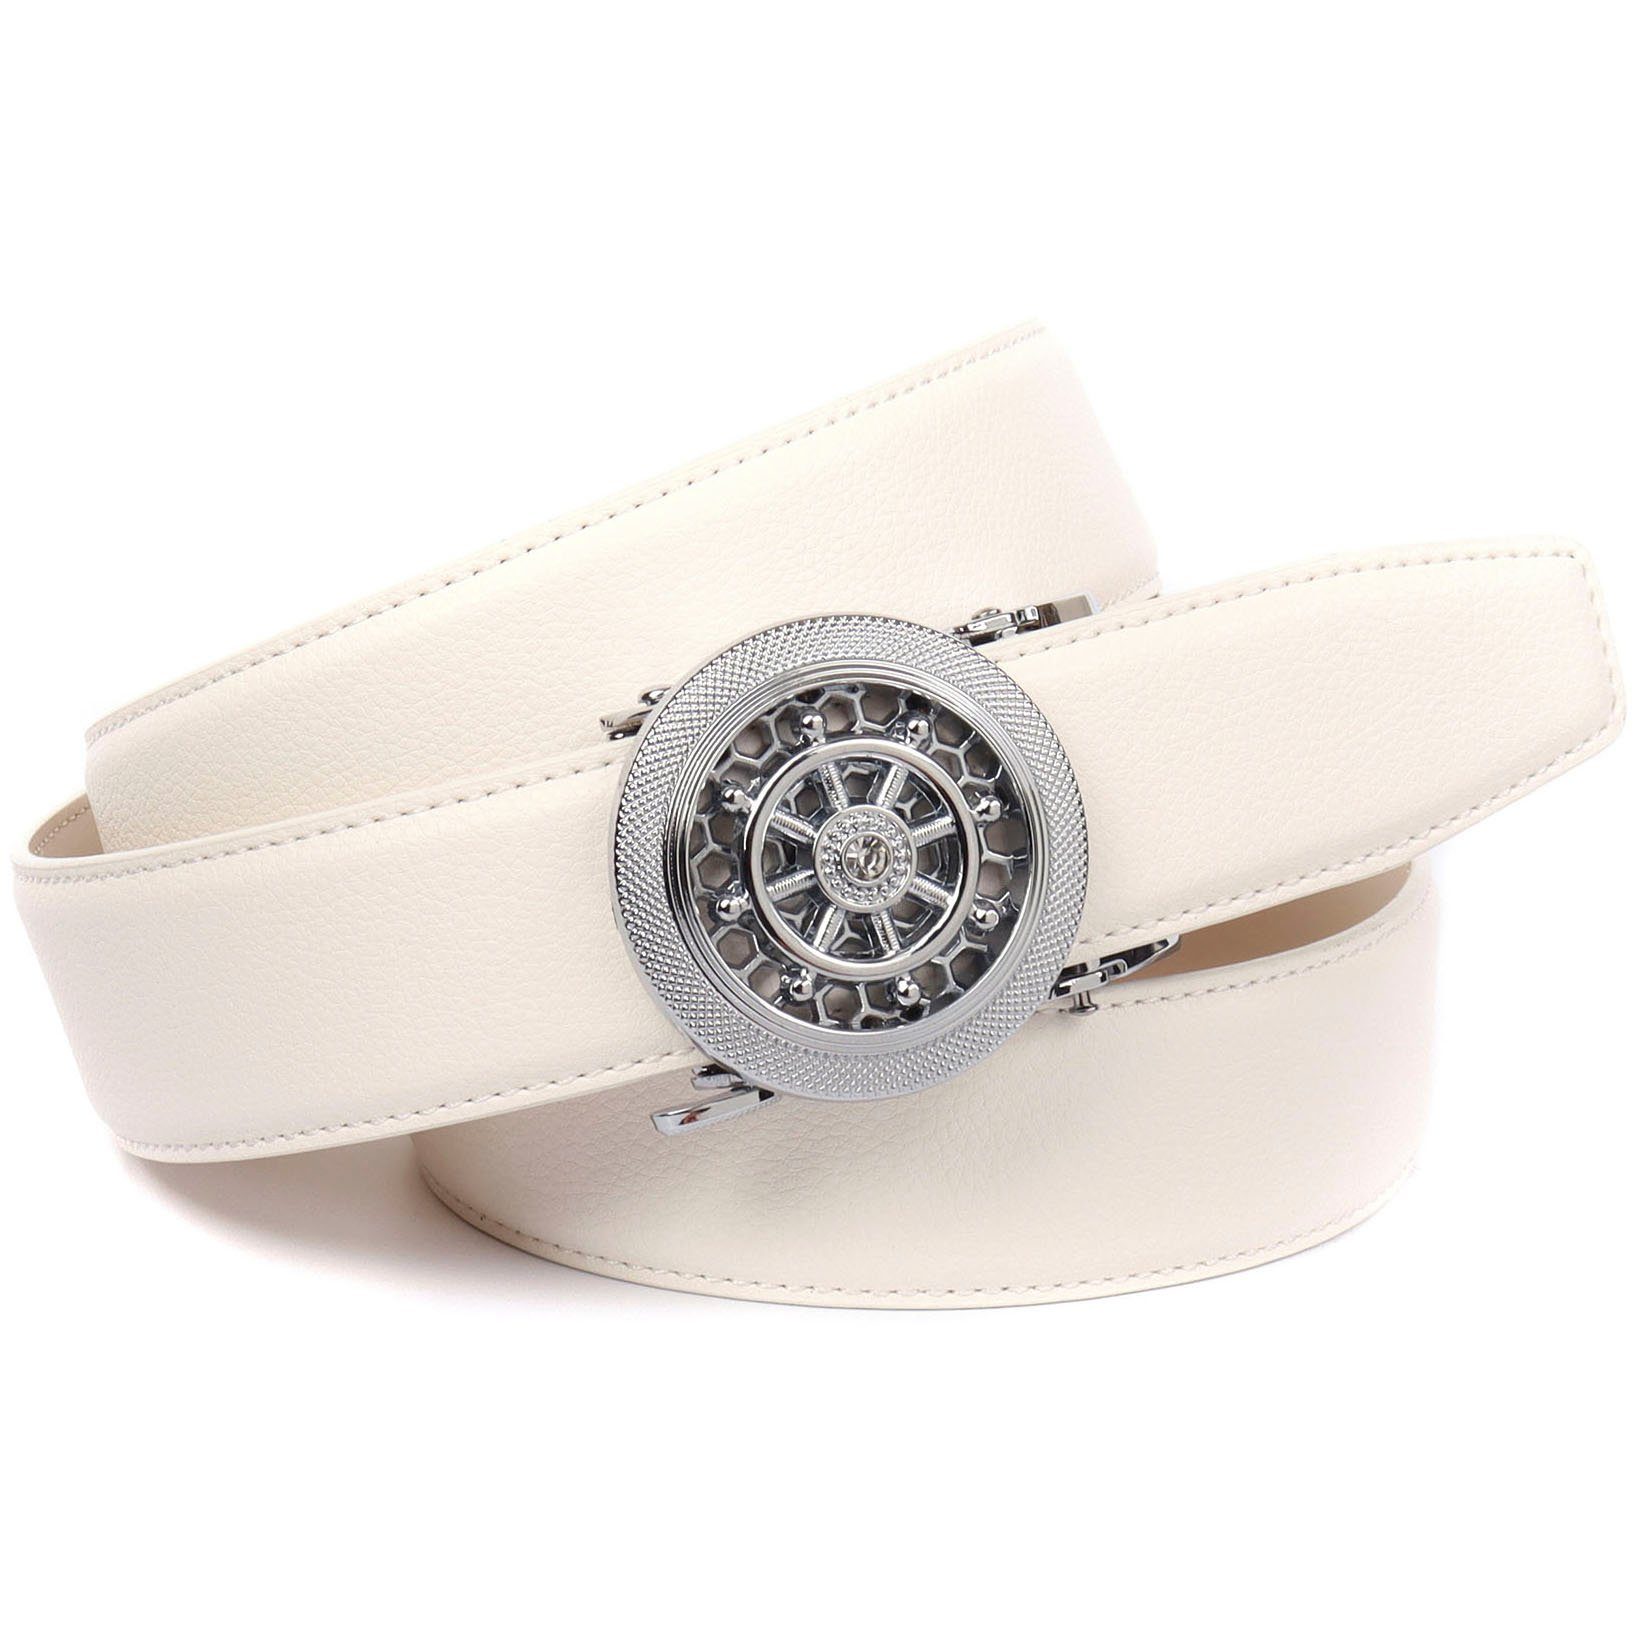 Anthoni Crown Ledergürtel mit silberfarbener Automatik-Schließe und drehendem Steuerruder weiß